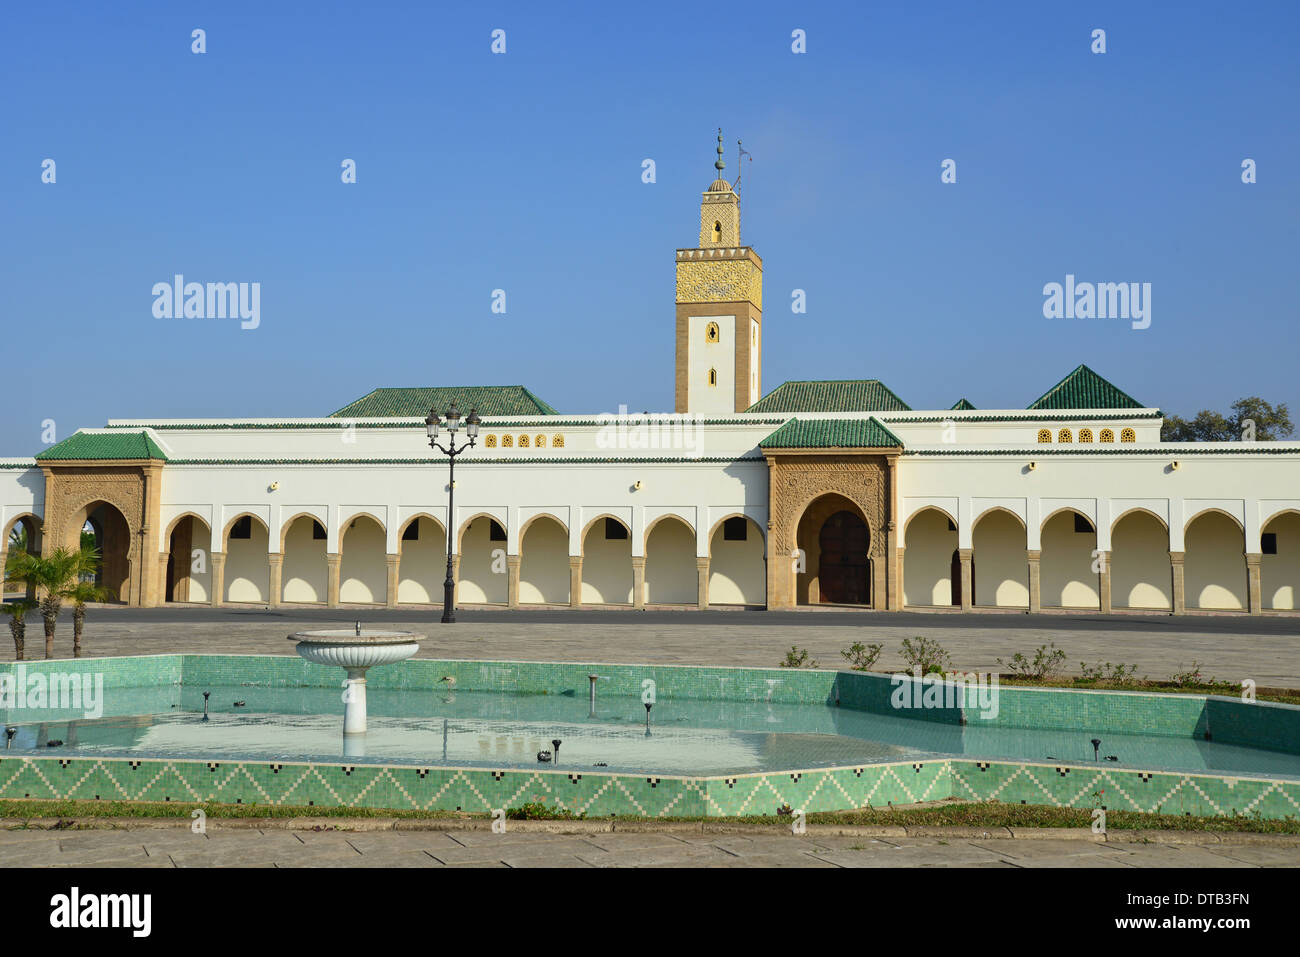 Königliche Moschee, Königspalast von Rabat, Rabat, Rabat-Salé-Zemmour-Zaer Region, Königreich Marokko Stockfoto